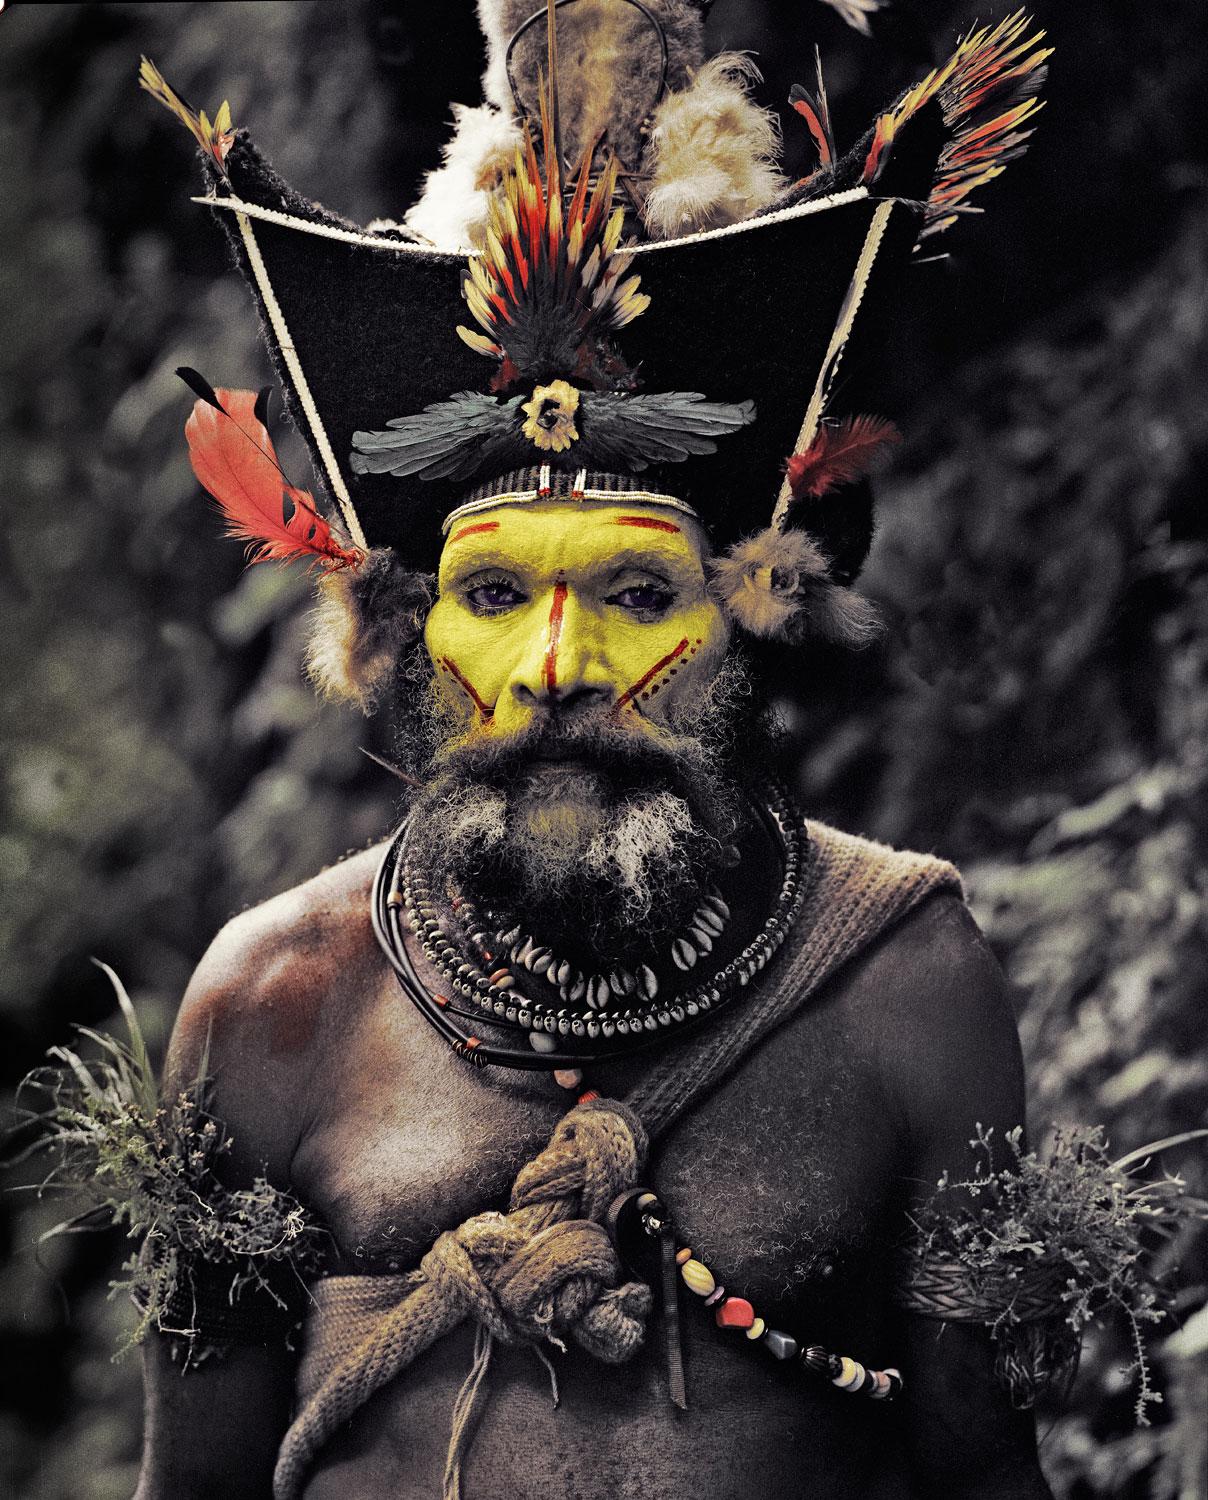 "XV 65 - Kati Hirawako - Hommes de Huli Wig - Chutes d'Ambua, Vallée de Tari - Papouasie-Nouvelle-Guinée, 2010

C'est en Papouasie que nous avons commencé notre voyage de deux mois en Océanie. En tant que région, elle est beaucoup plus facile à